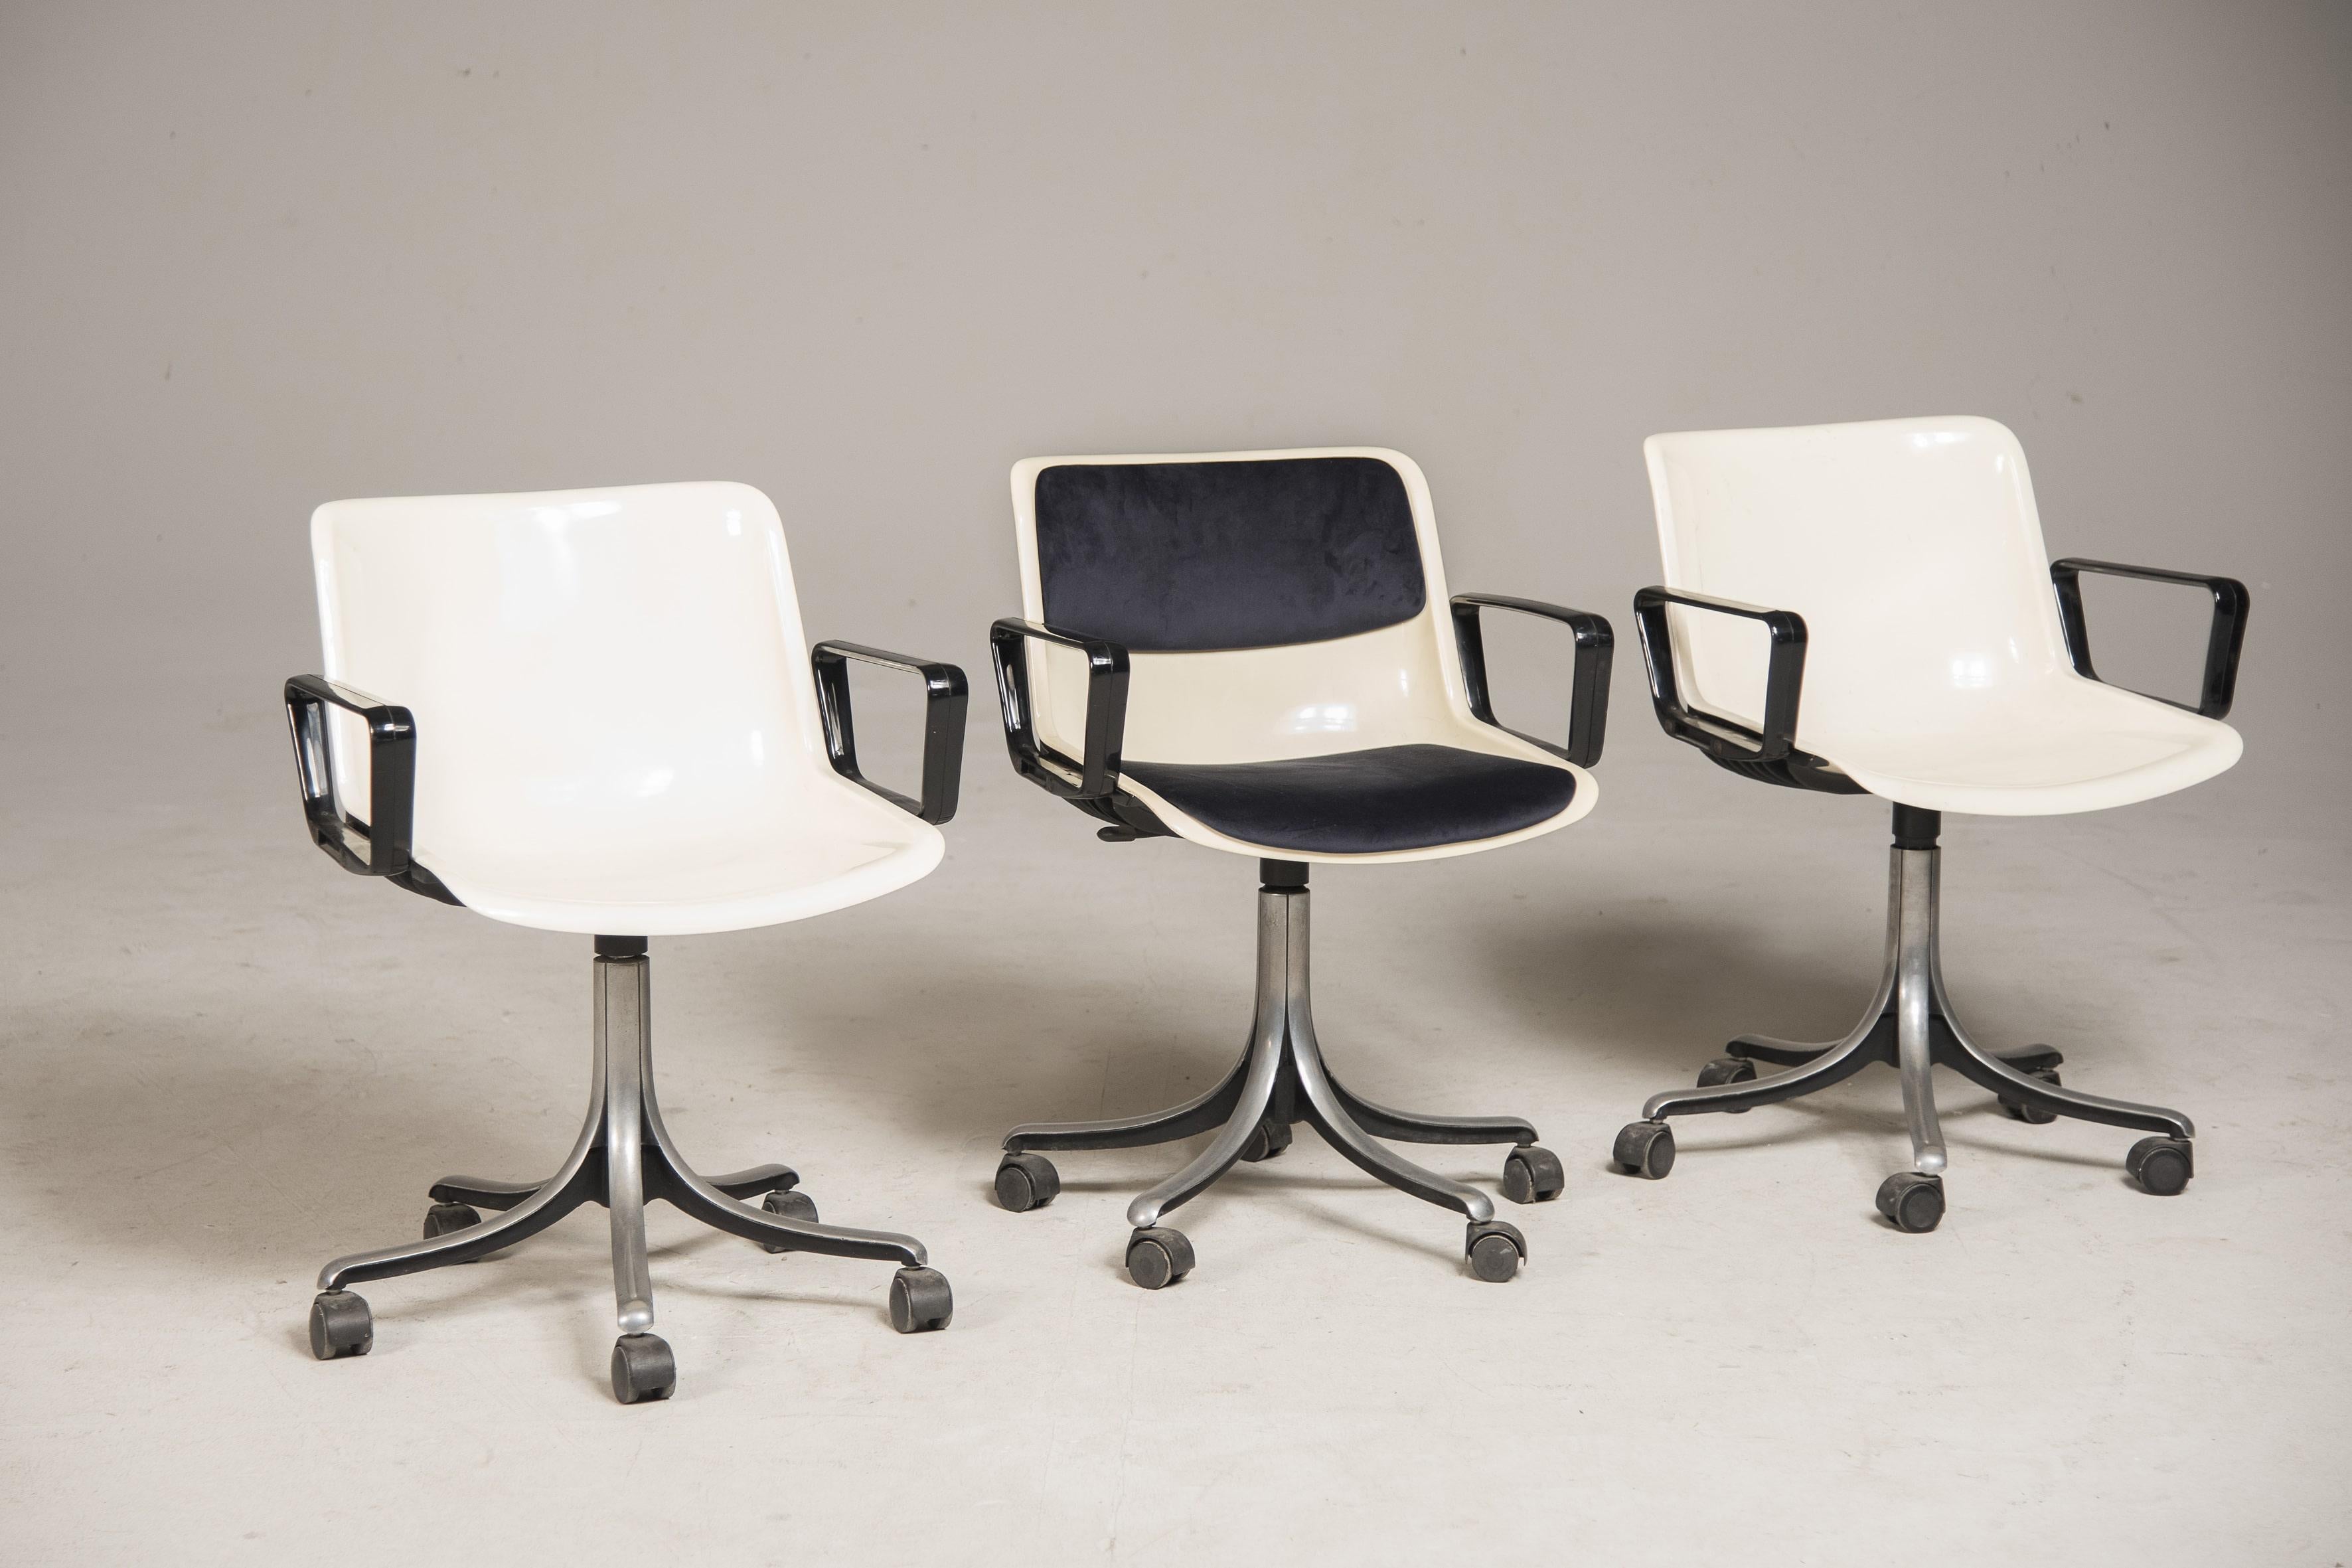 Drei Bürodrehstühle von Osvaldo Borsani für Tecno, hergestellt in Italien in den 1980er Jahren. Auf der Unterseite gestempelt und an der Seite mit Tecno gekennzeichnet. Die Drehstühle sind aus weißem  Plastik. Der Rollsockel ist aus 5-Sterne-Metall.